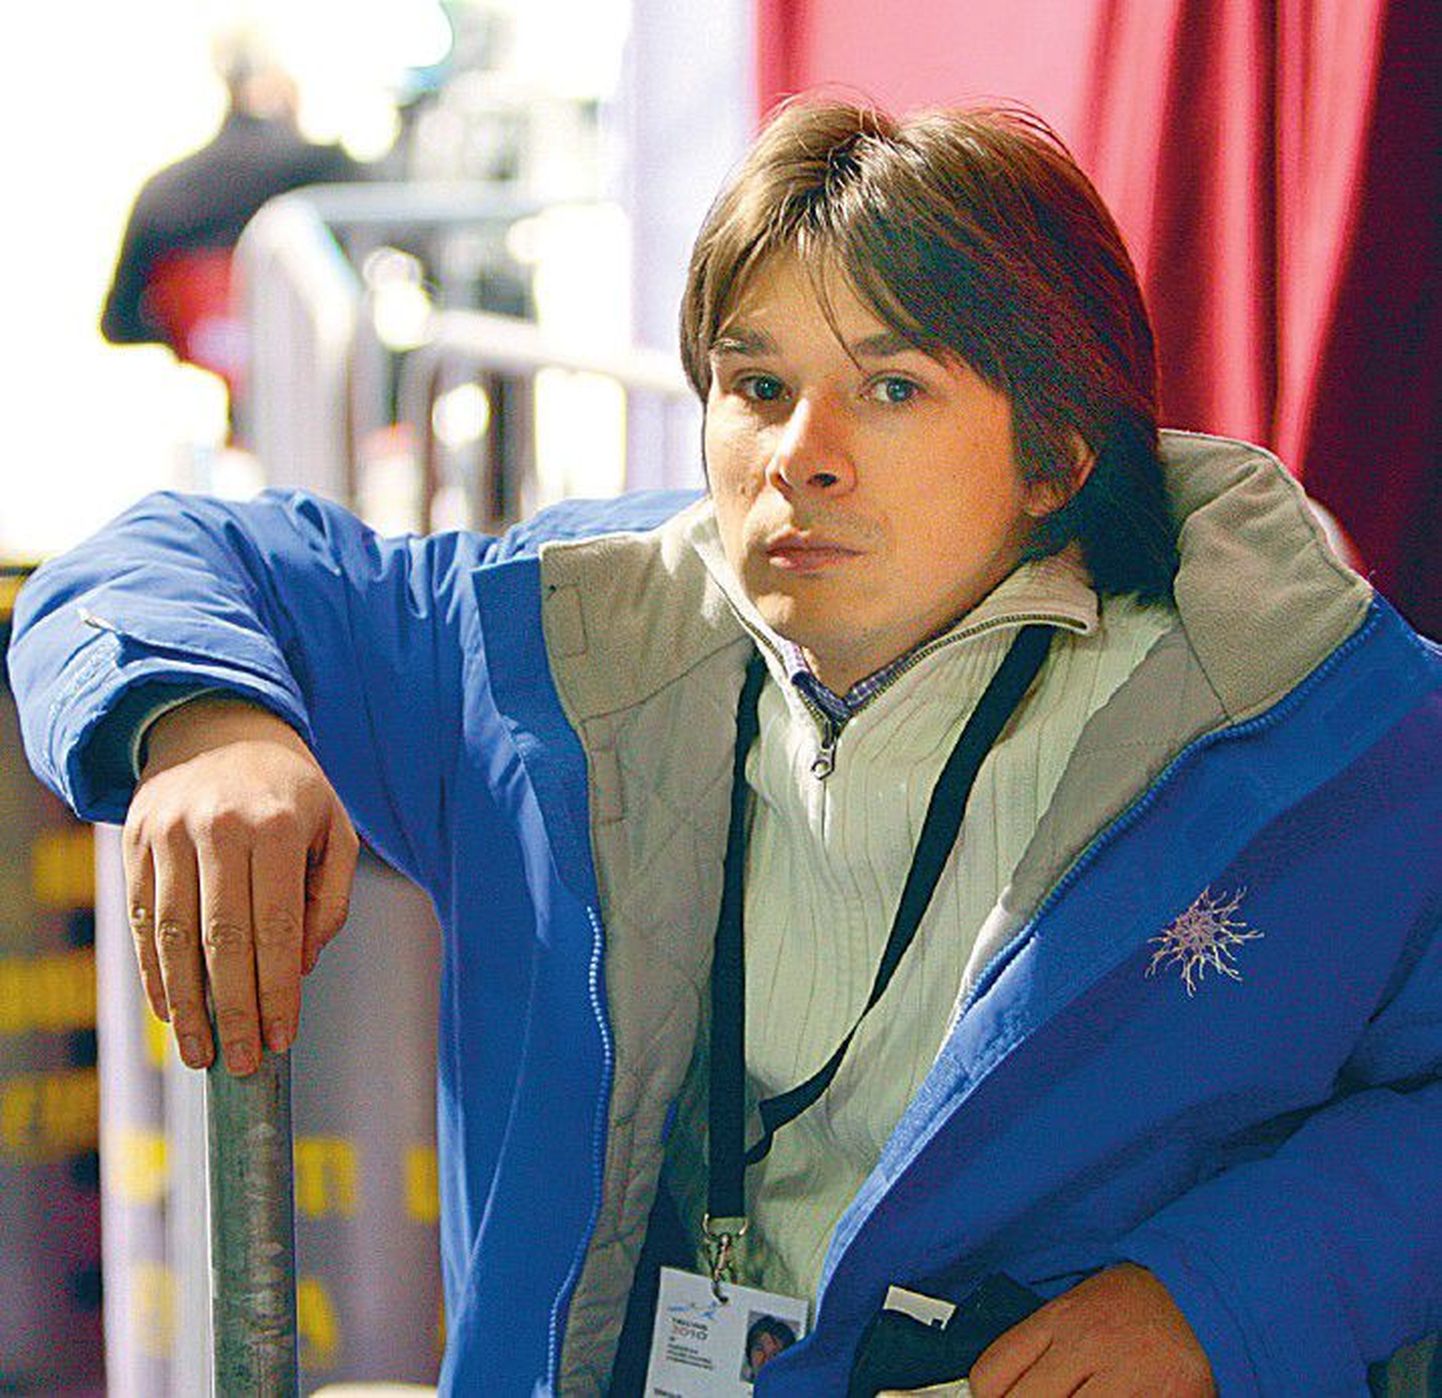 Известный в прошлом фигурист Маргус Хернитс стал генеральным секретарем Эстонского союза лыжного спорта.